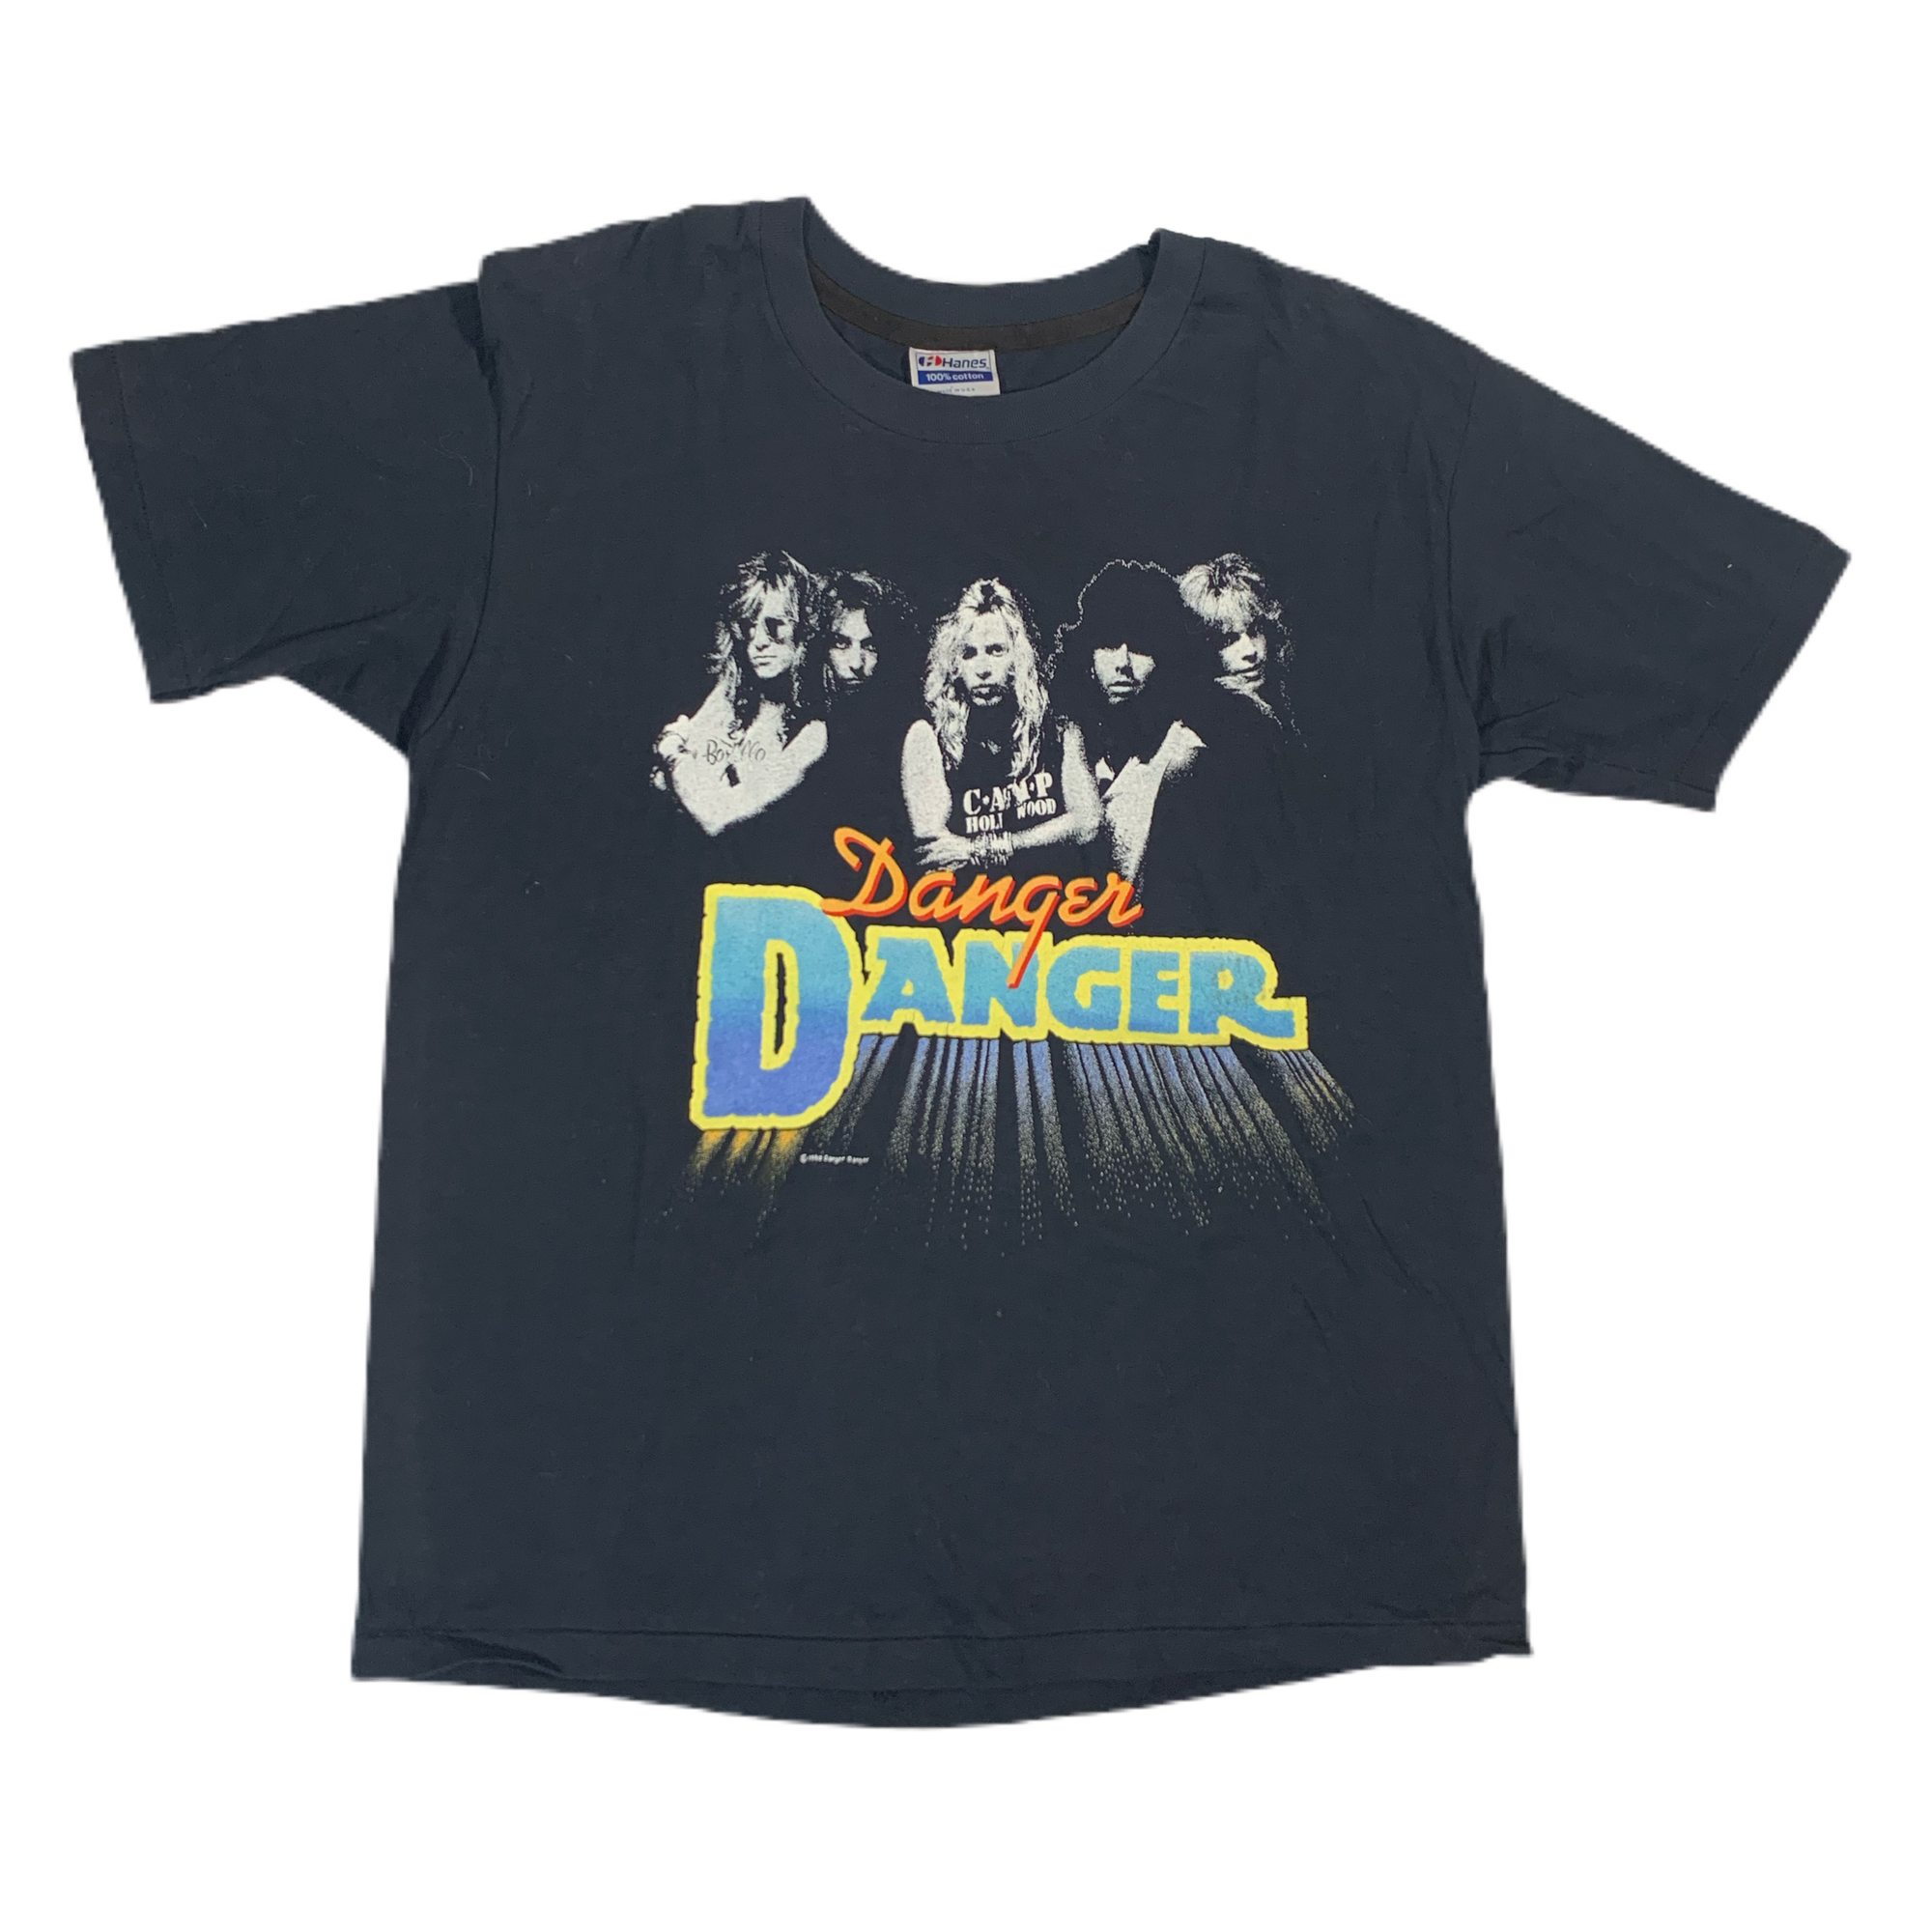 Vintage Danger Danger “Naughty” T-Shirt - jointcustodydc